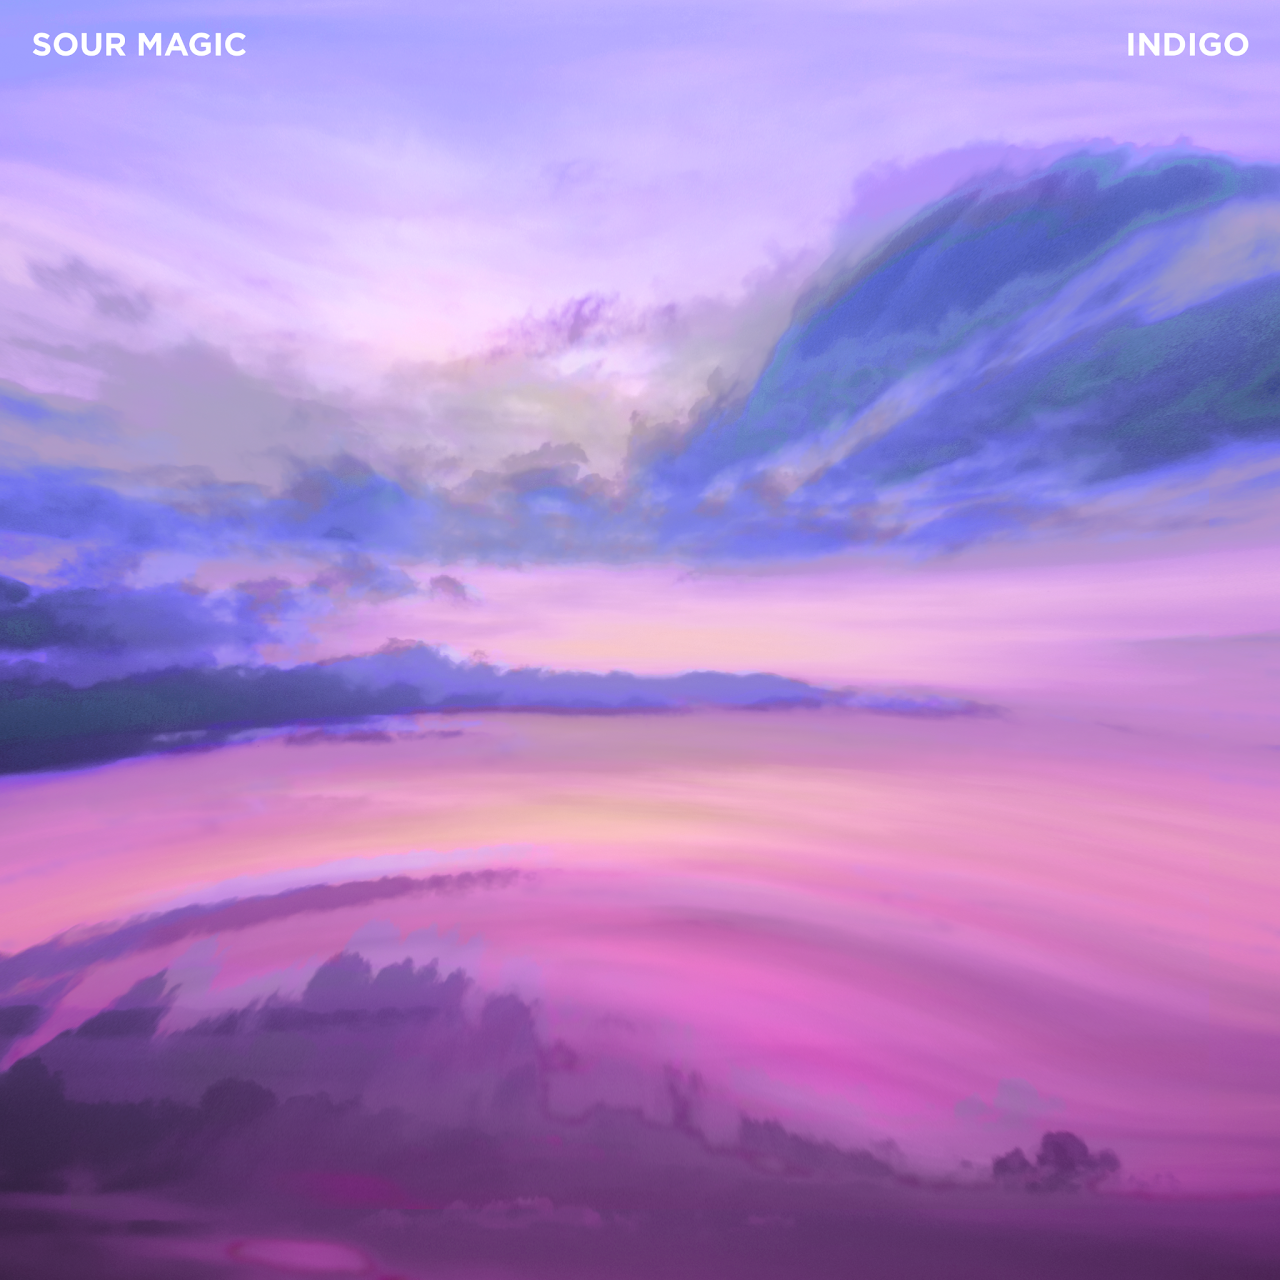 Sour Magic set to release new single, 'Indigo'